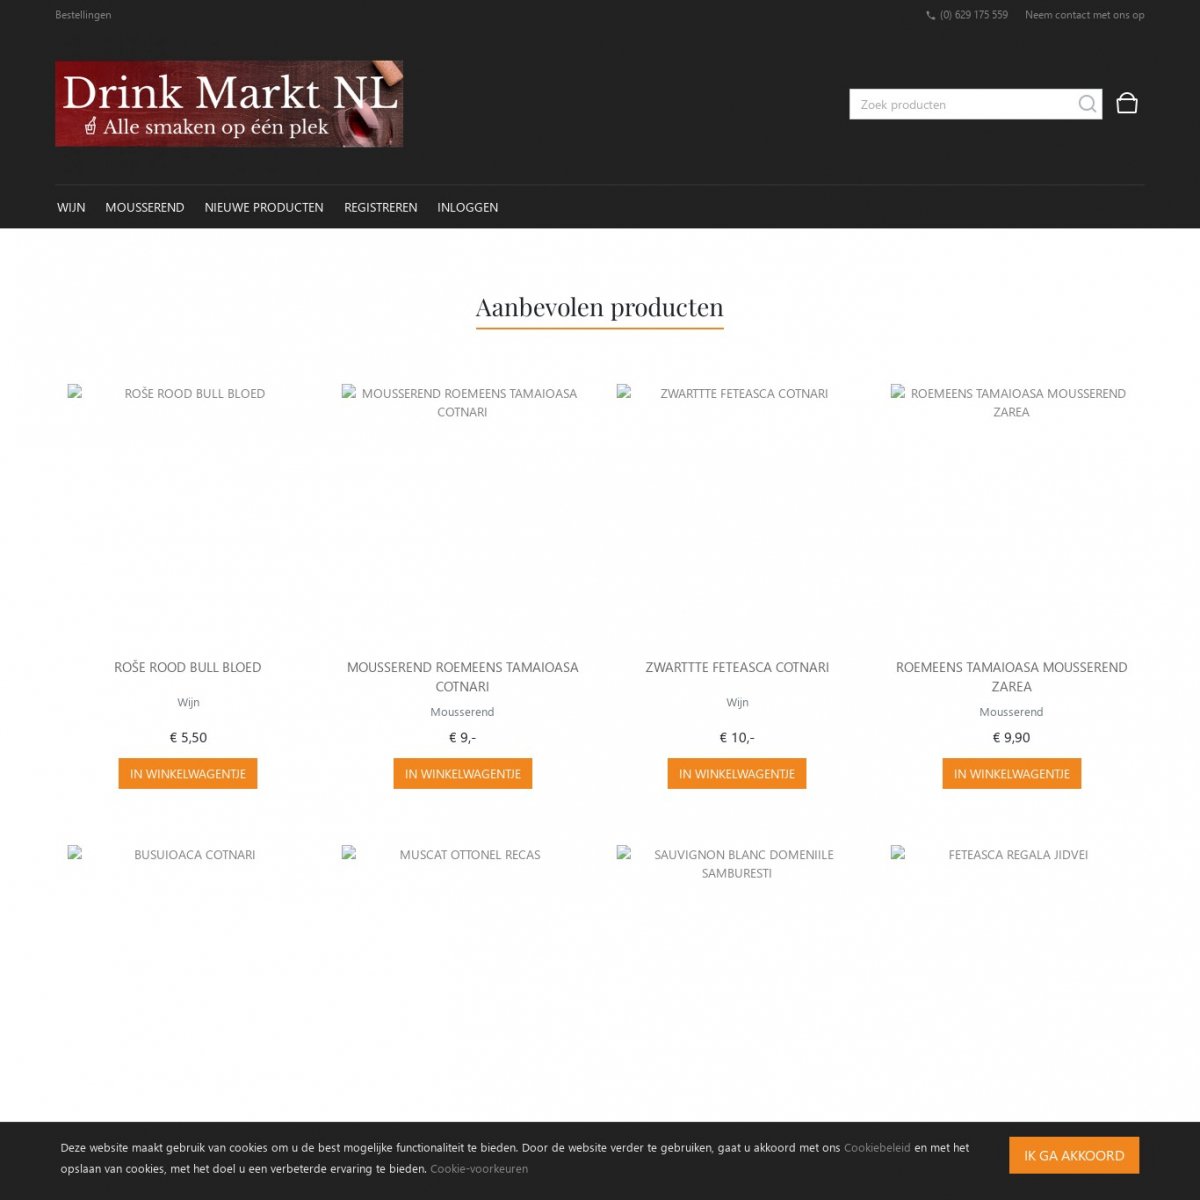 Drink Markt NL